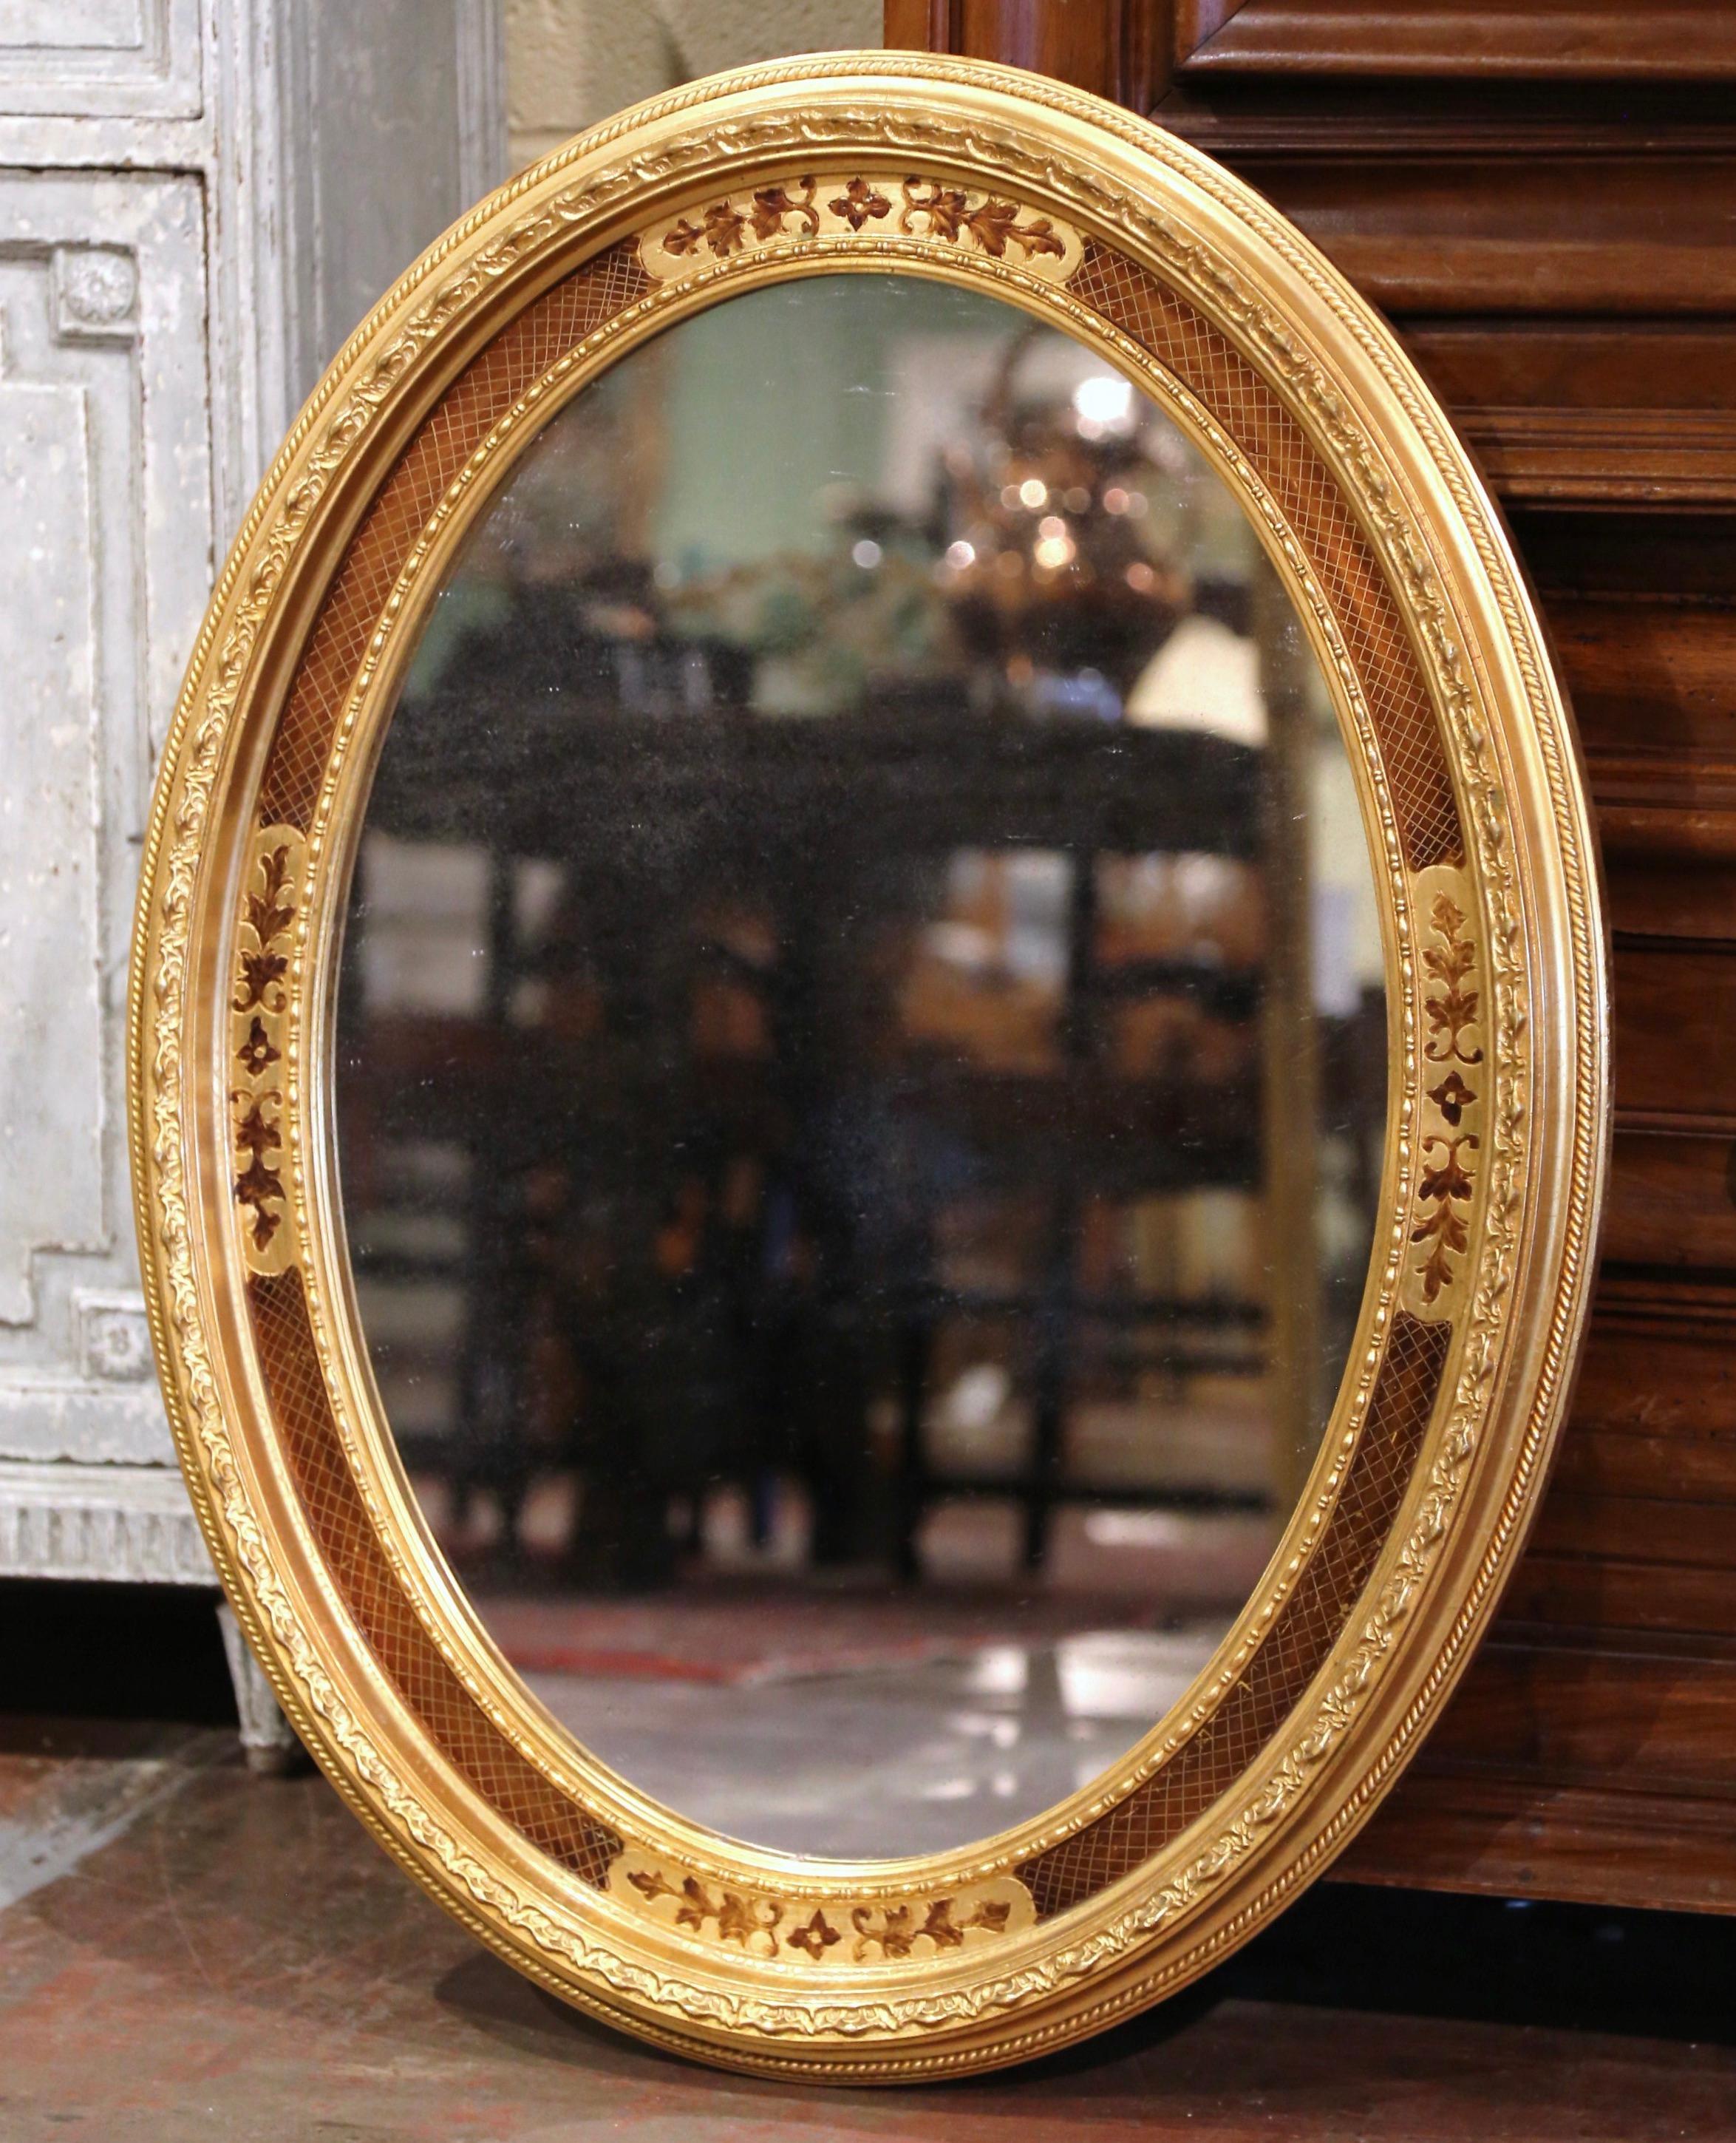 Décorez une salle d'eau ou une entrée avec cet élégant miroir mural ancien. Fabriqué en France, vers 1950, le cadre ovale est décoré de motifs floraux et agrémenté de motifs géométriques autour du cadre, dont un décor de perles. Le miroir de style